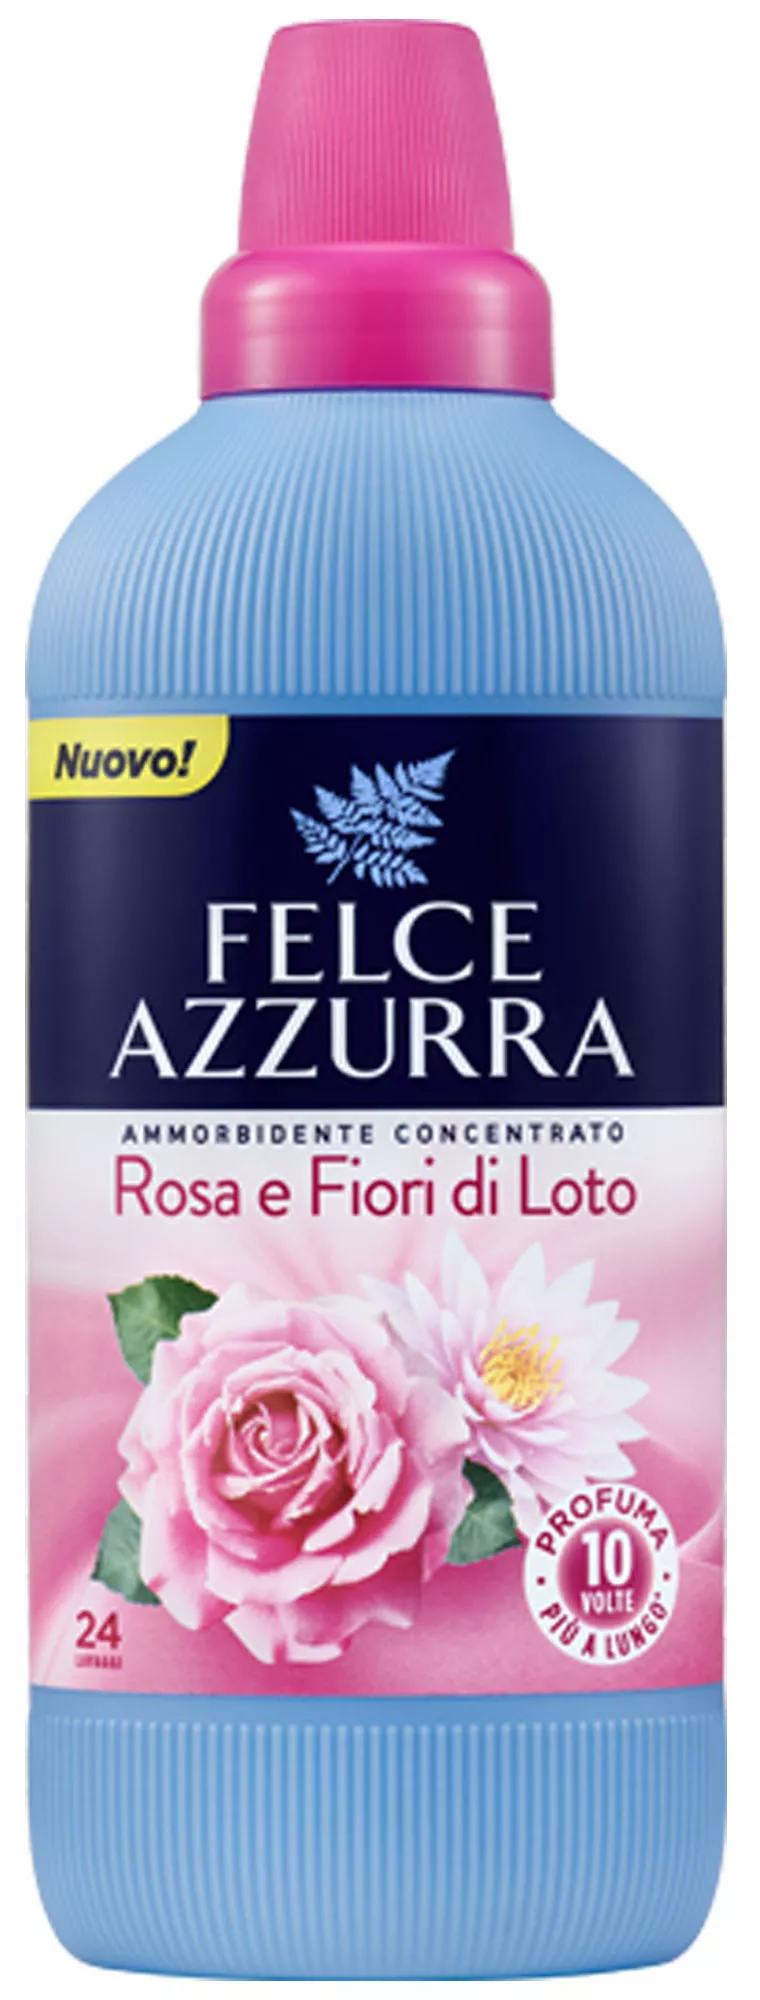 Balsam Concentrat de Rufe Felce Azzurra  - Trandafir si Flori de Lotus